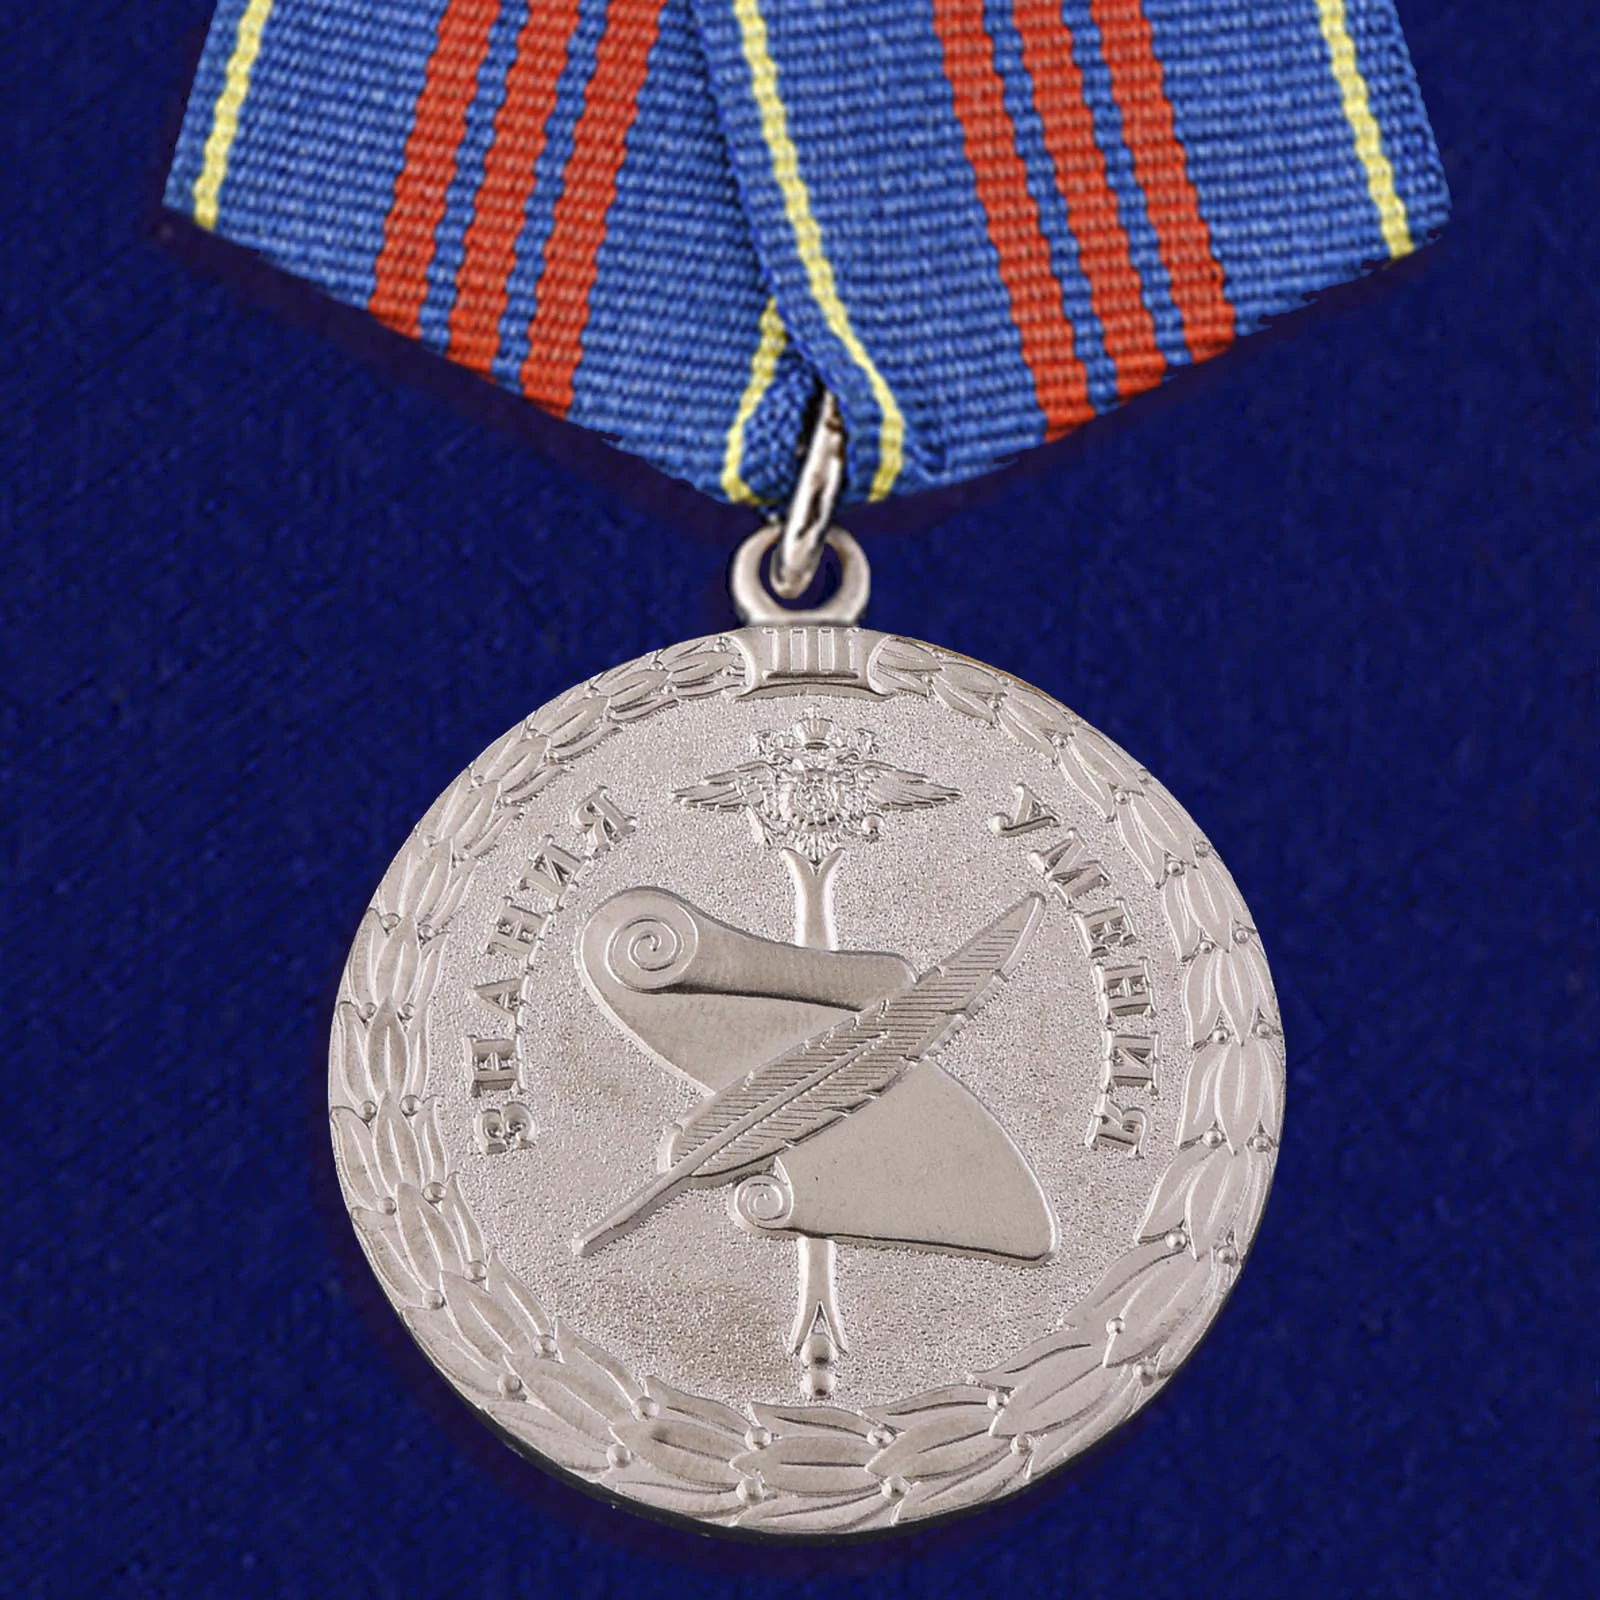 Медаль "Управленческая деятельность" 3 степени МВД